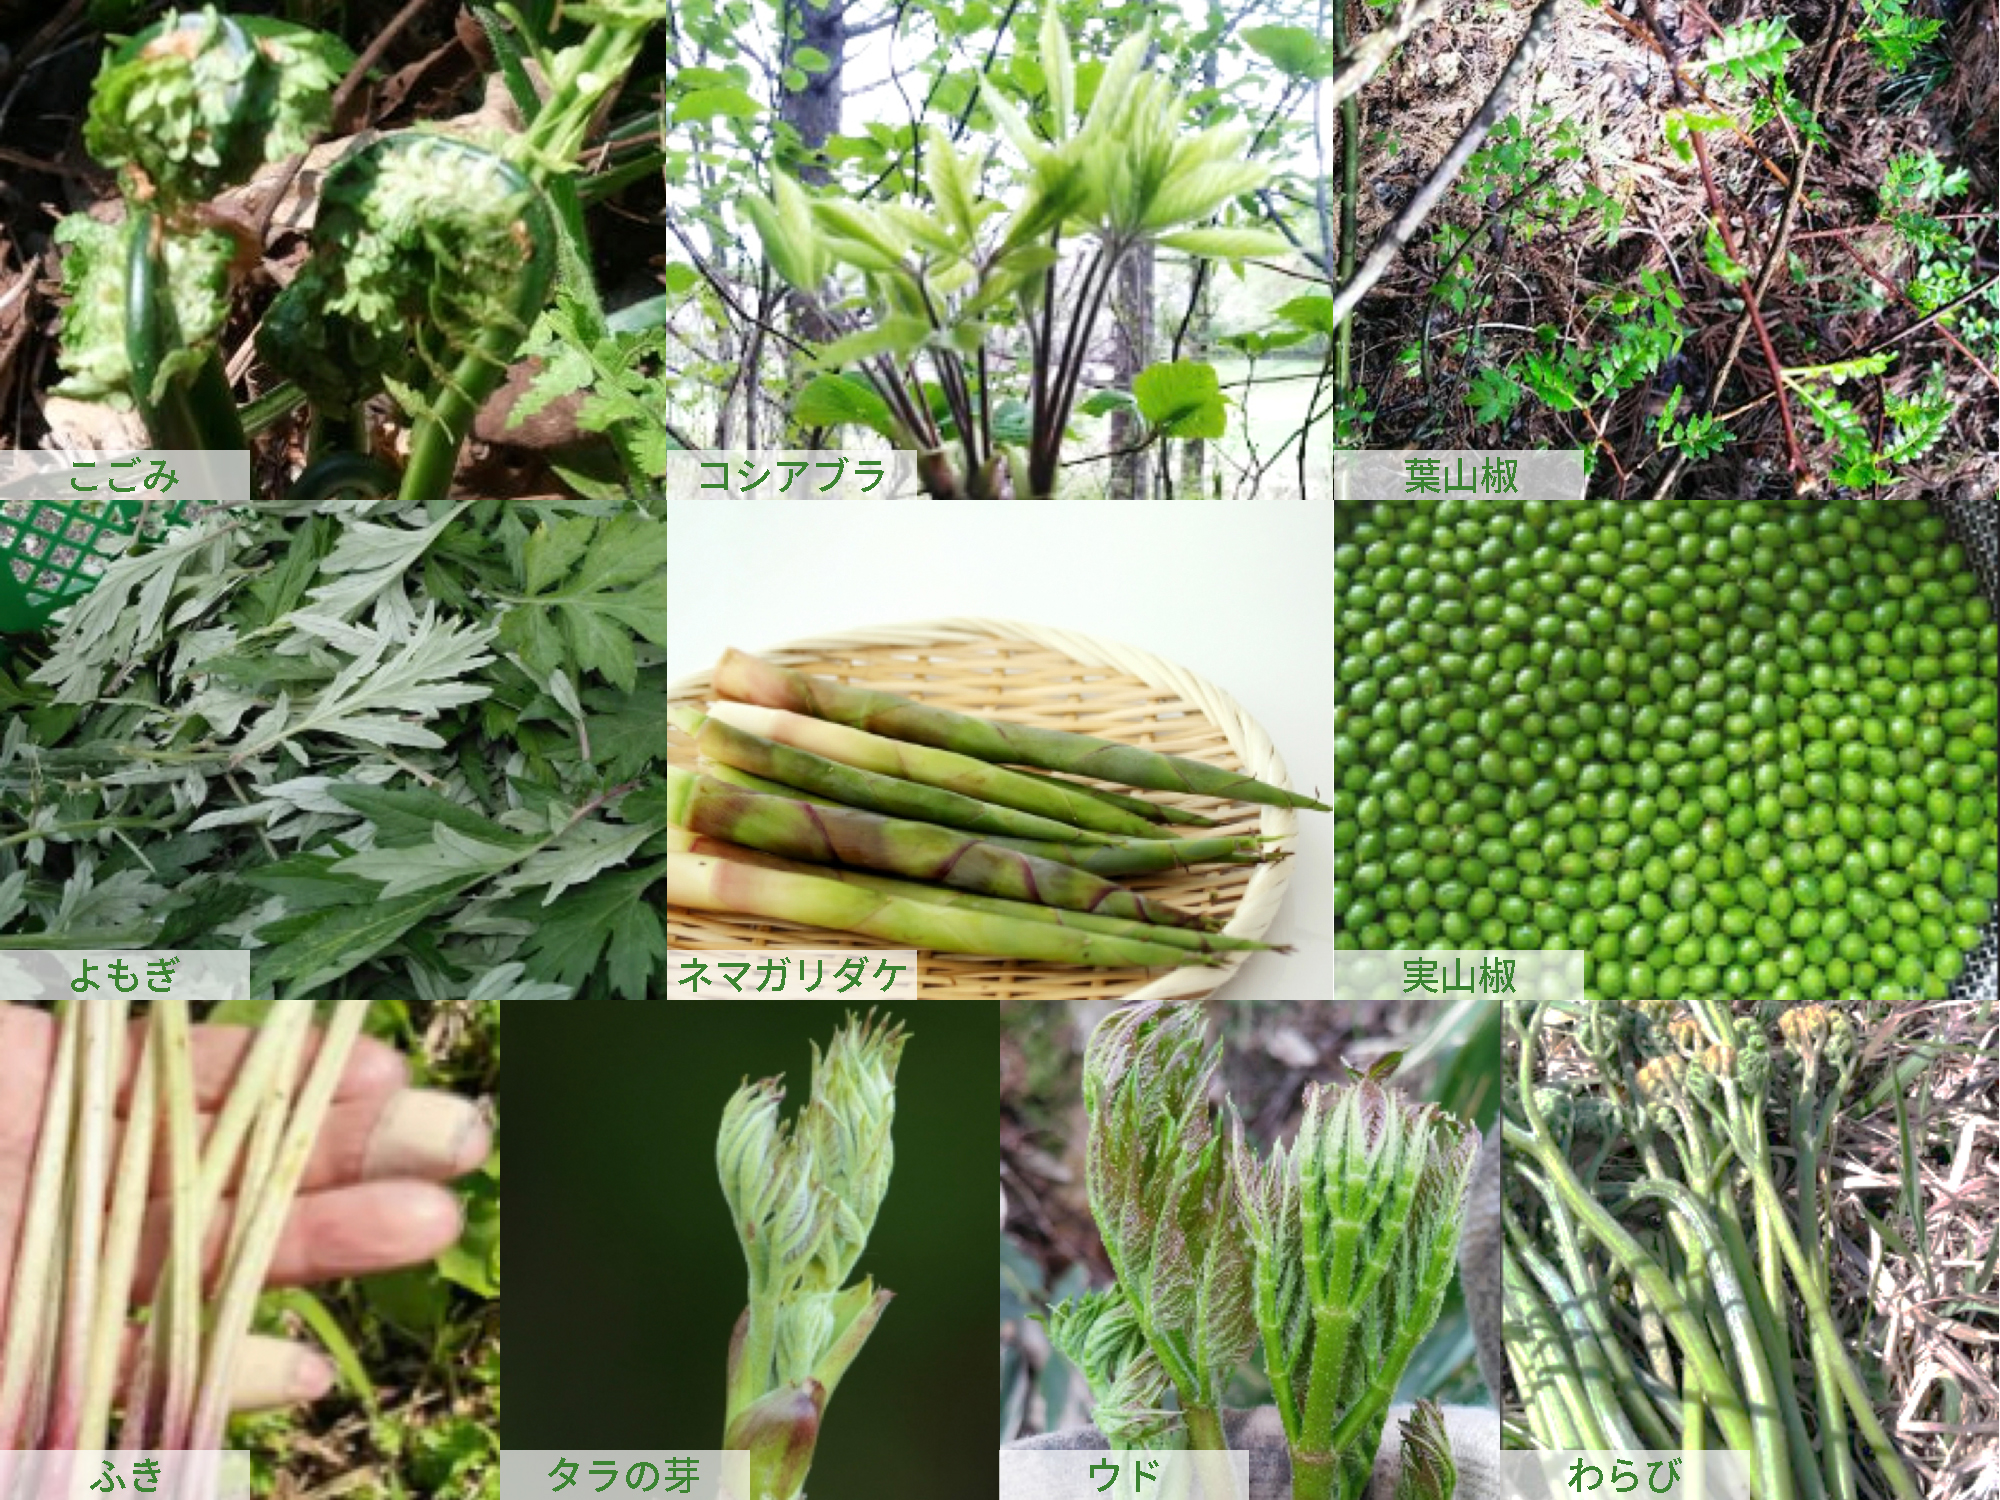 山菜採り／Picking Wild Vegetables